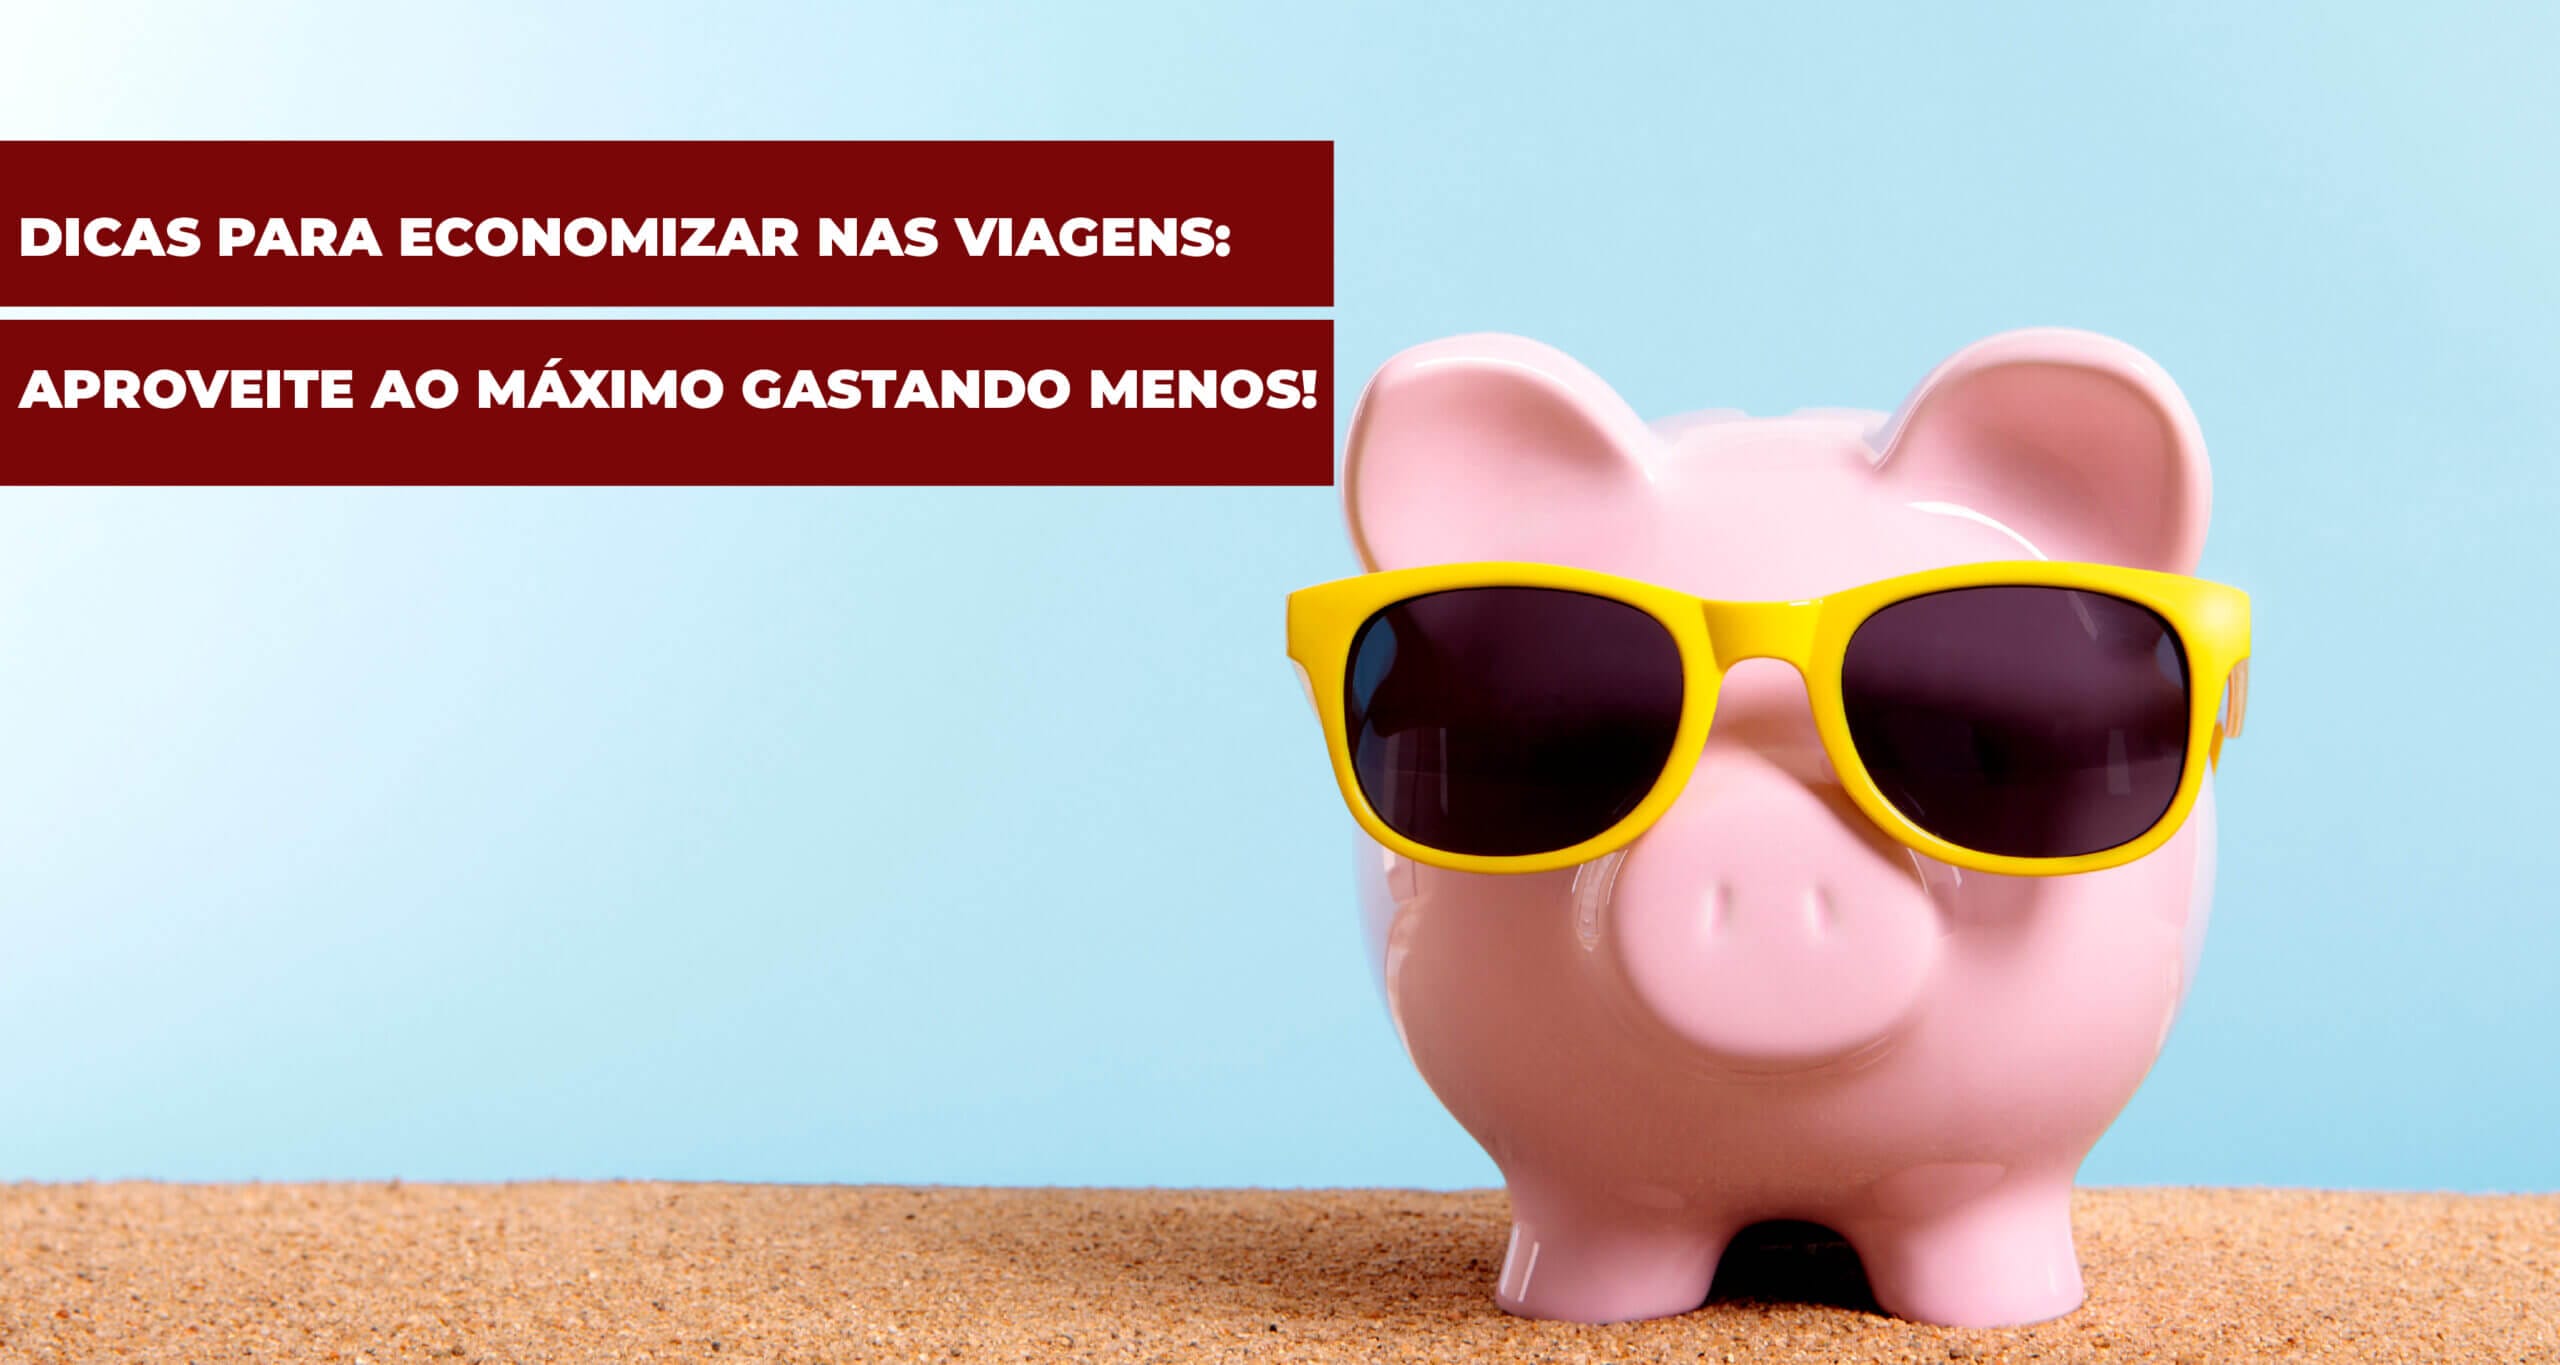 Featured image for “Dicas para Economizar nas Viagens: Aproveite ao Máximo Gastando Menos!”